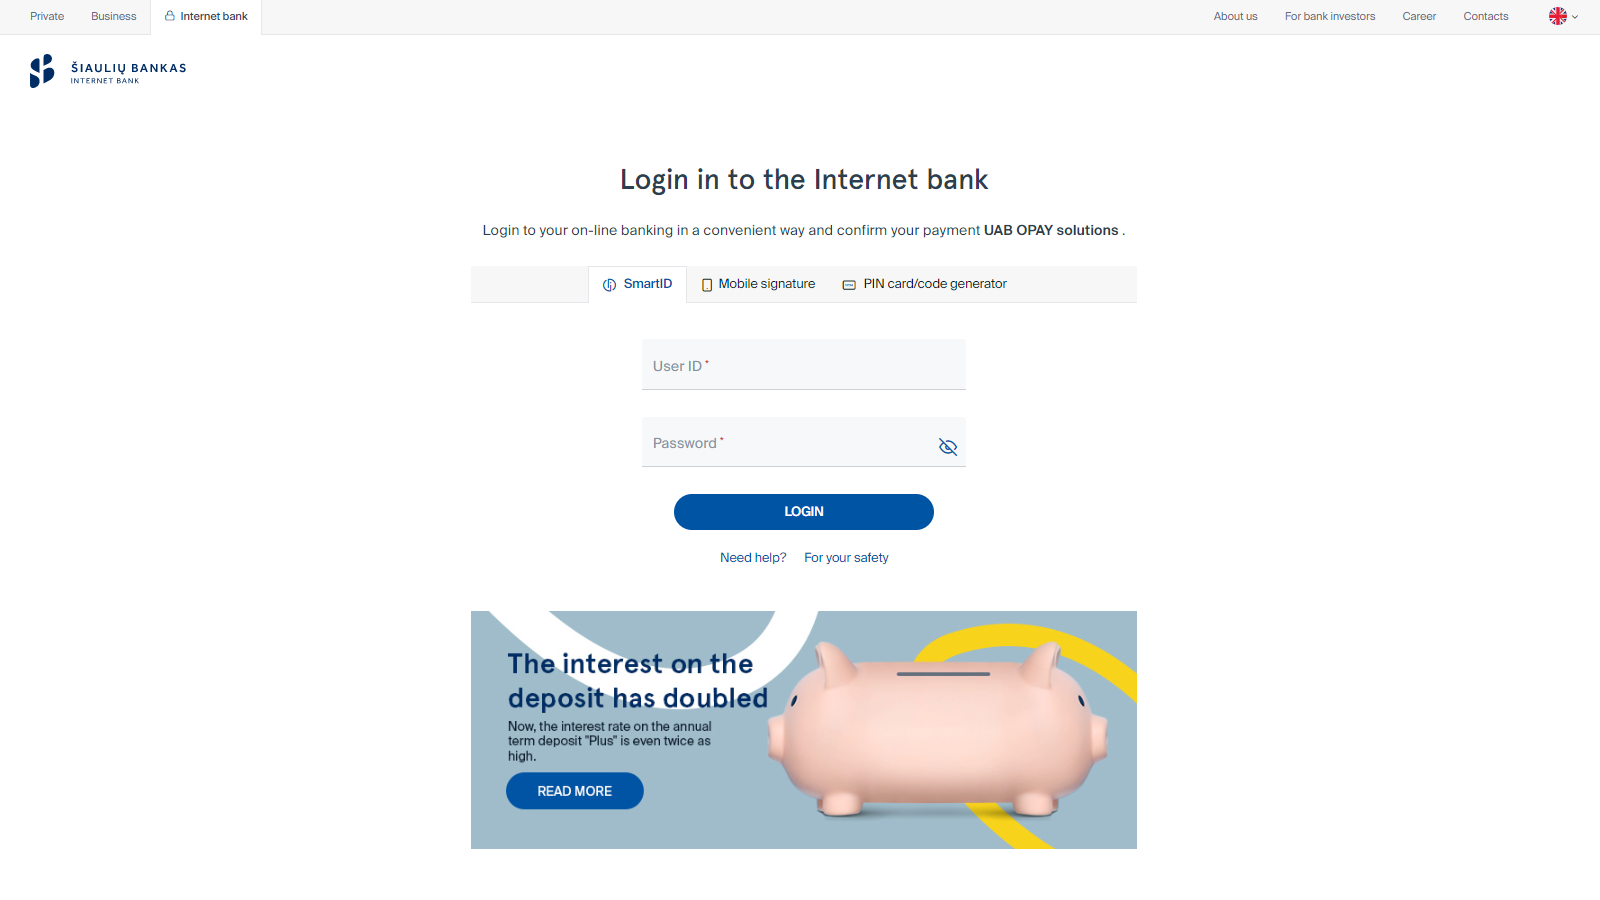 Å iauliÅ³ bankas payment page